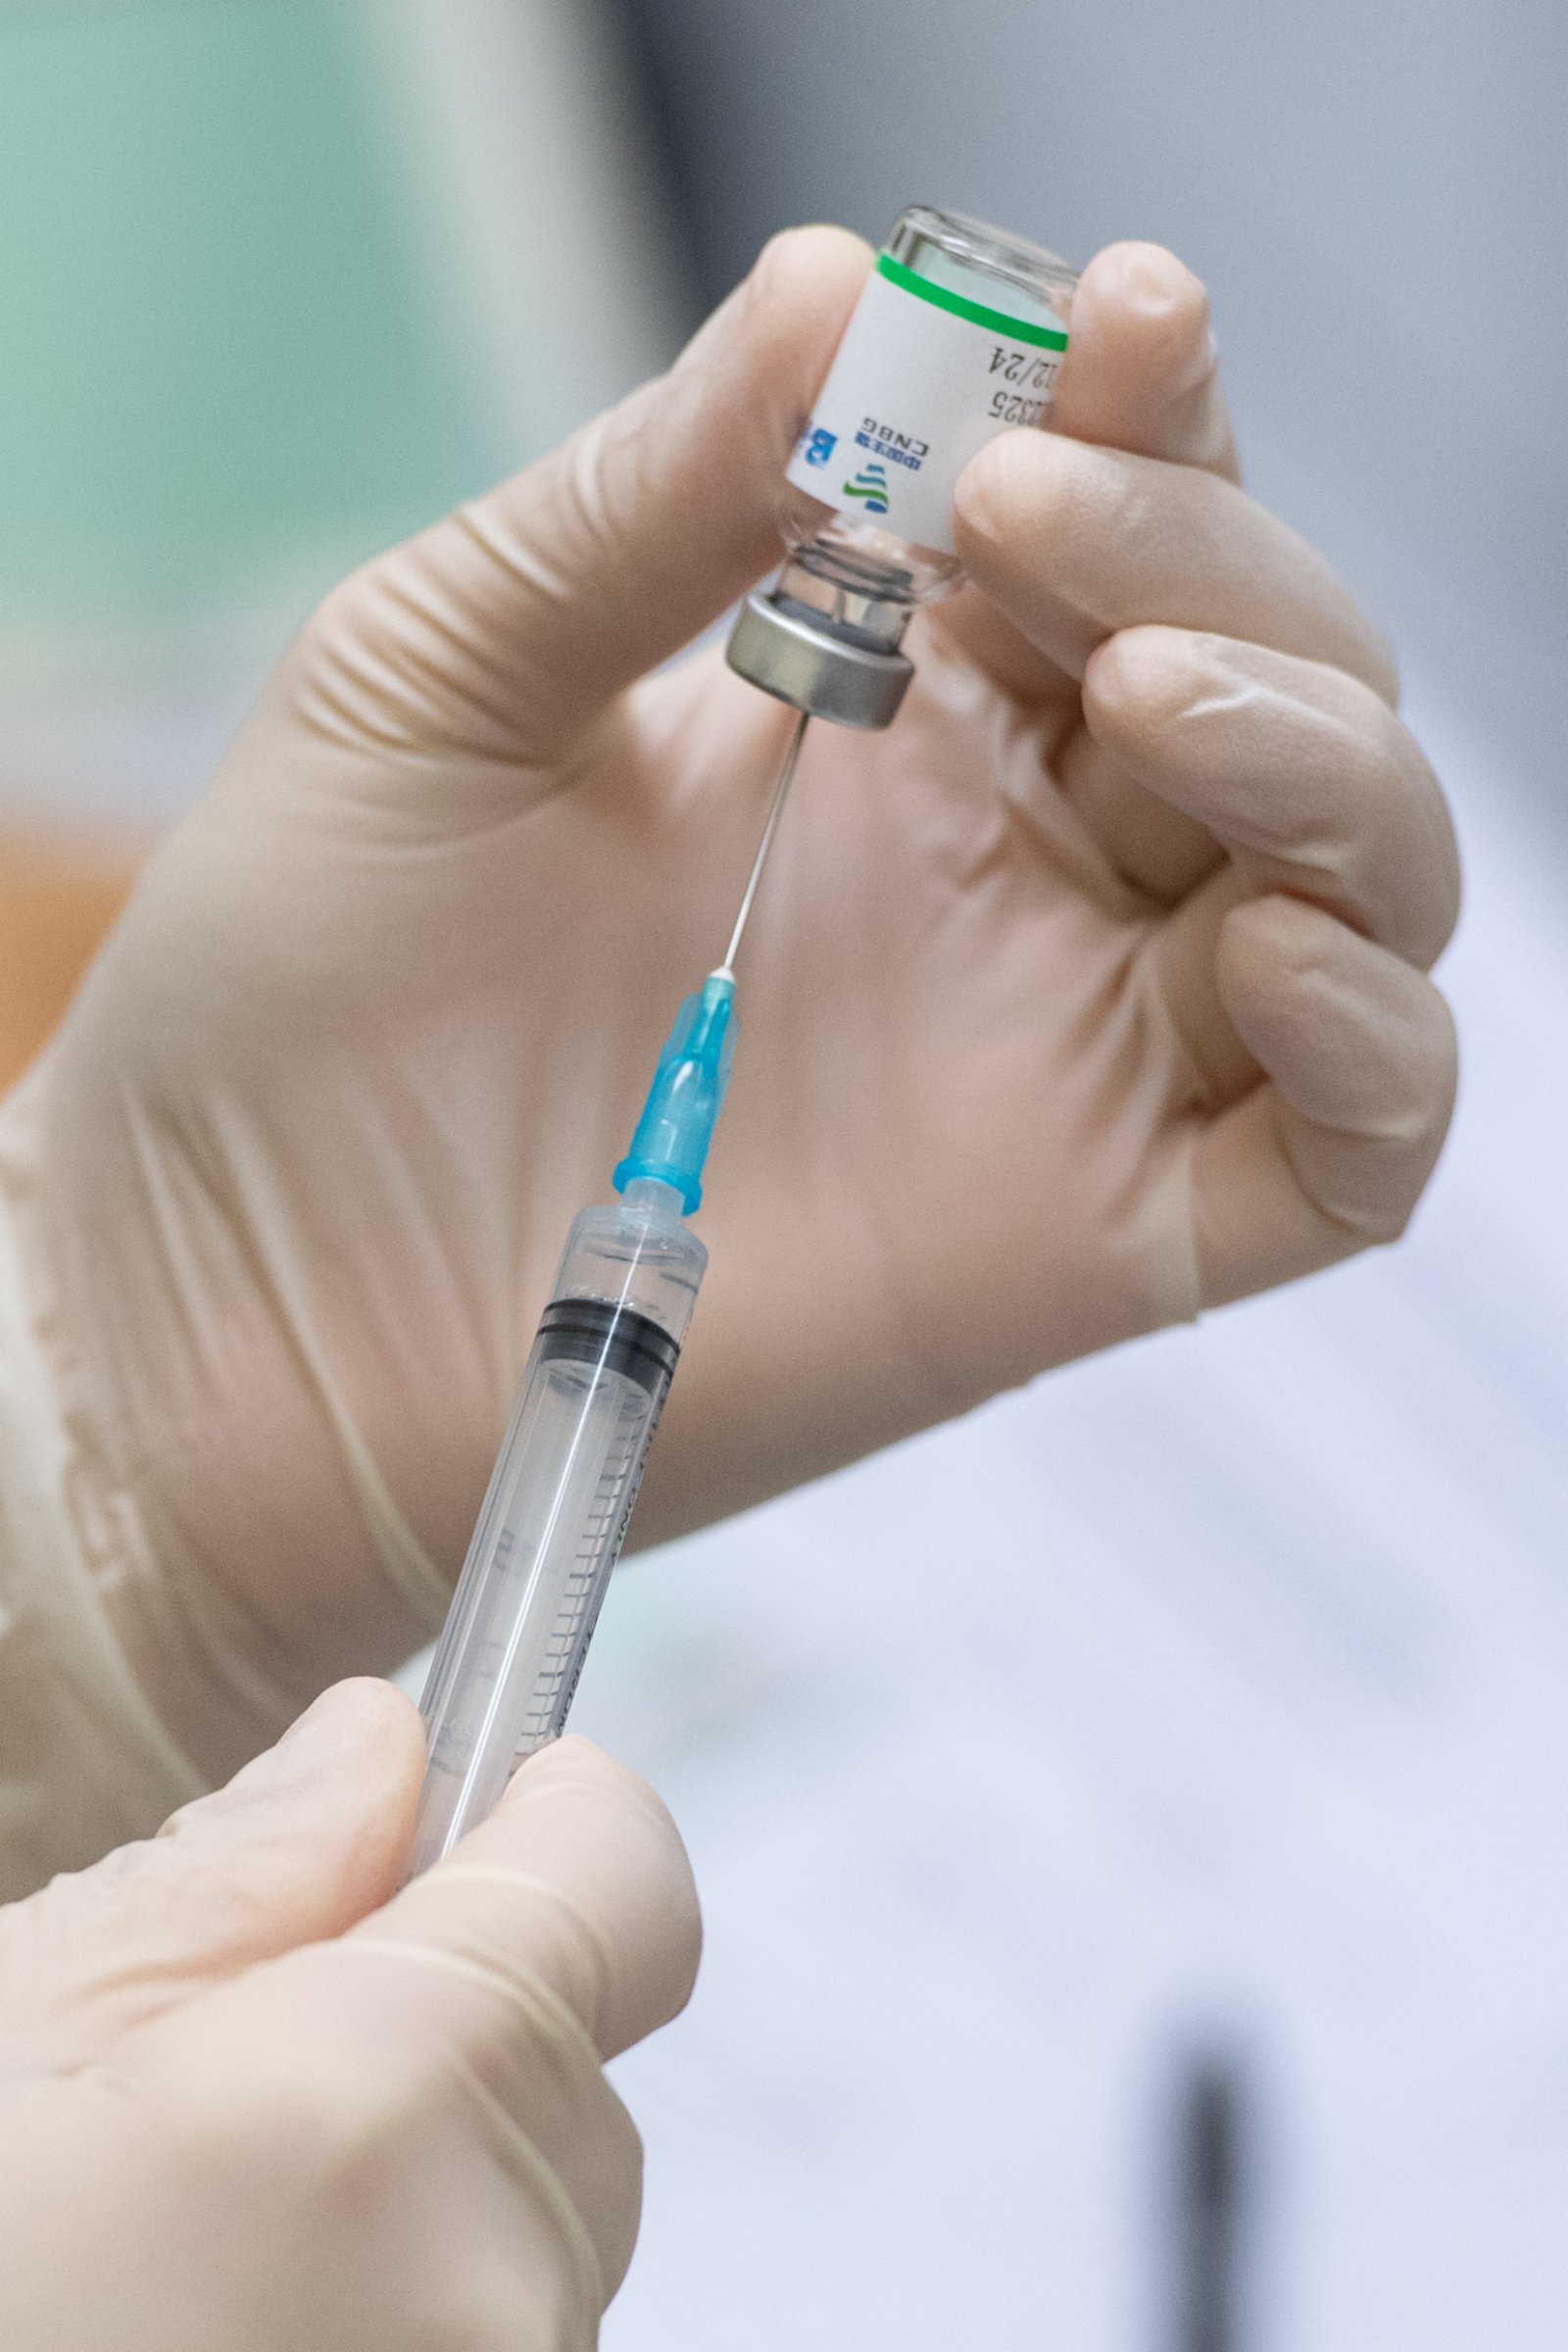 澳門黑沙環衞生中心醫護人員準備注射新冠疫苗。